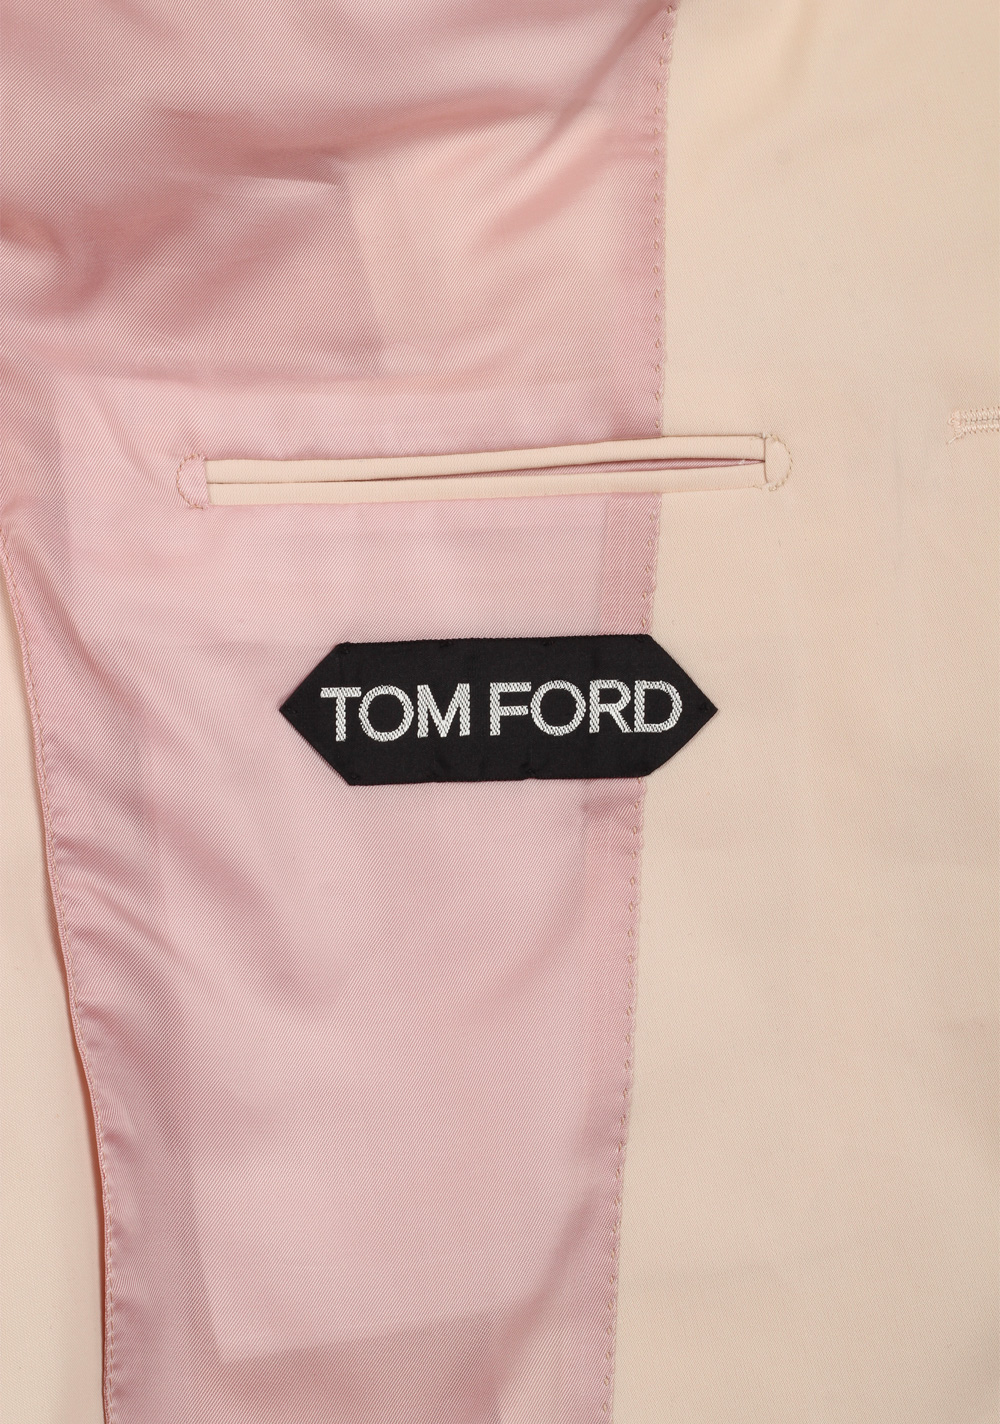 TOM FORD Atticus Off White Suit Size 46 / 36R U.S. | Costume Limité